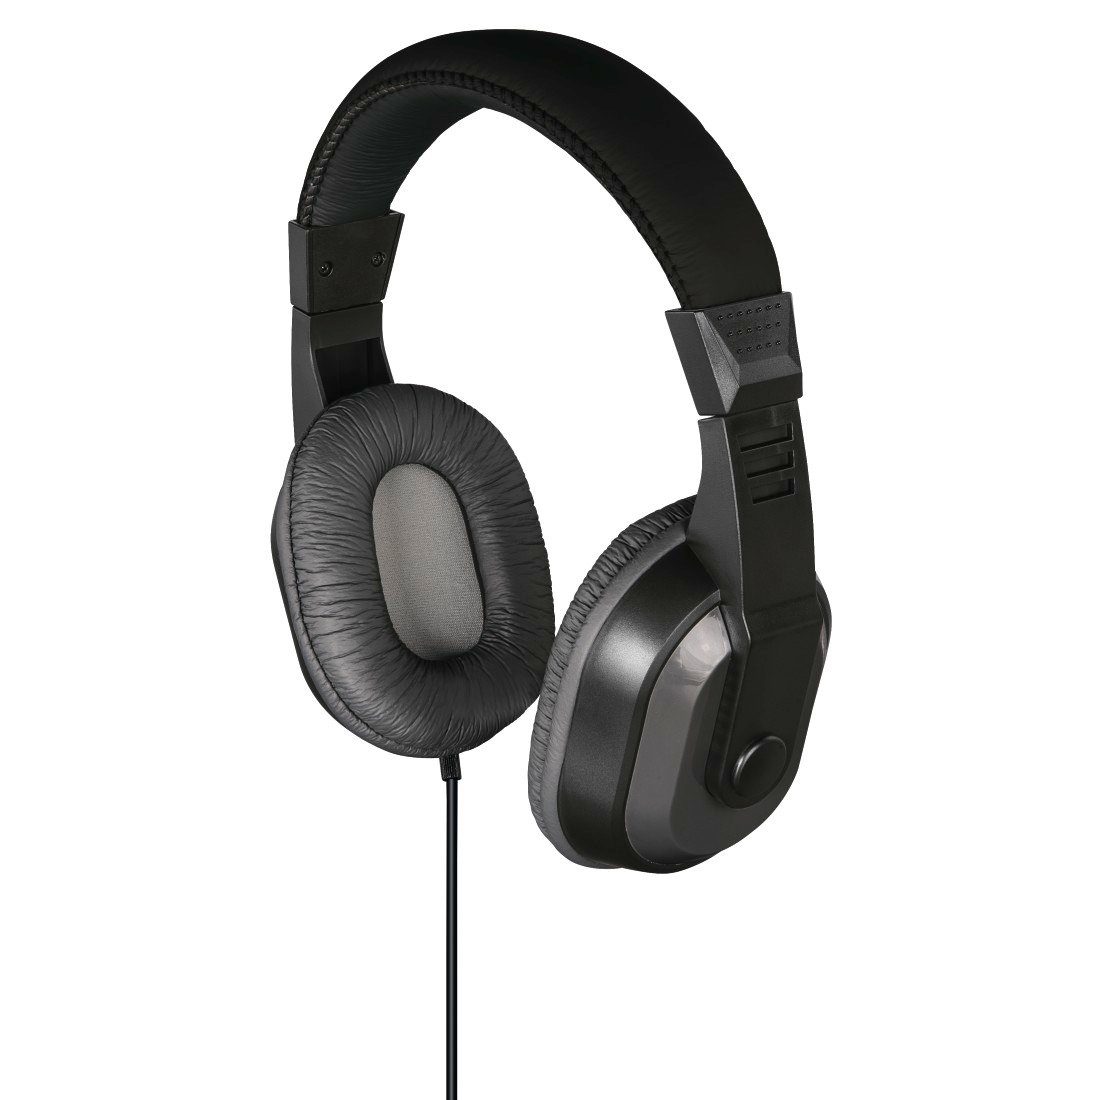 Ear schwarz Thomson mit Over angenehmer Kopfhörer (Geräuschisolierung, Tragekomfort, Geräuschreduzierung, passiver Klang) Over-Ear-Kopfhörer guter